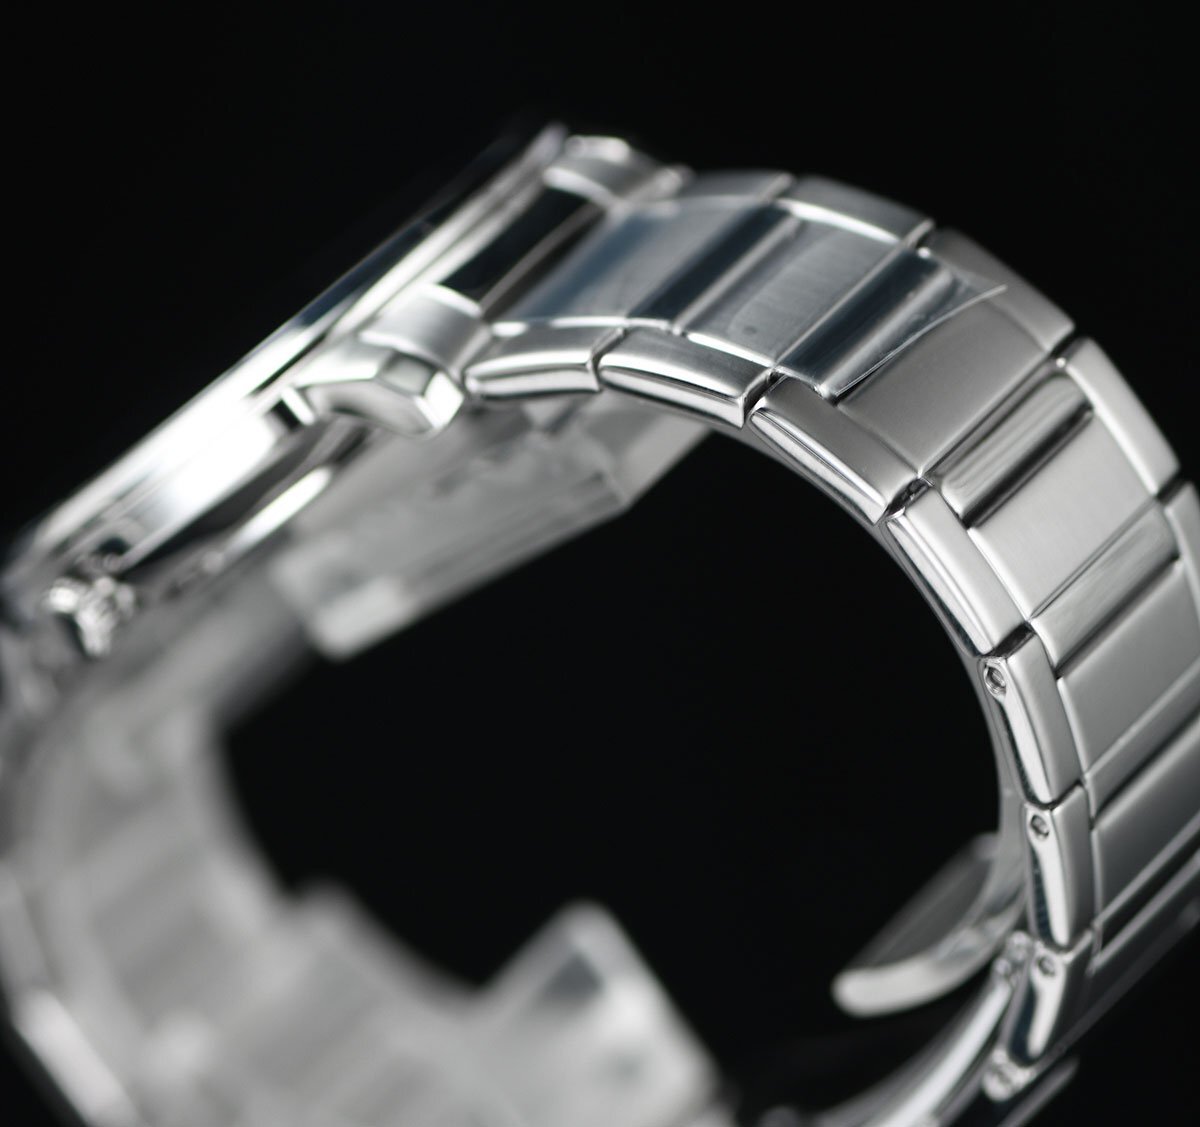 新品1円 逆輸入セイコーALBA サファイアガラス風防 深みあるダークブルーメタリック 50m防水 メンズ 激レア日本未発売 アルバ SEIKO 腕時計の画像5